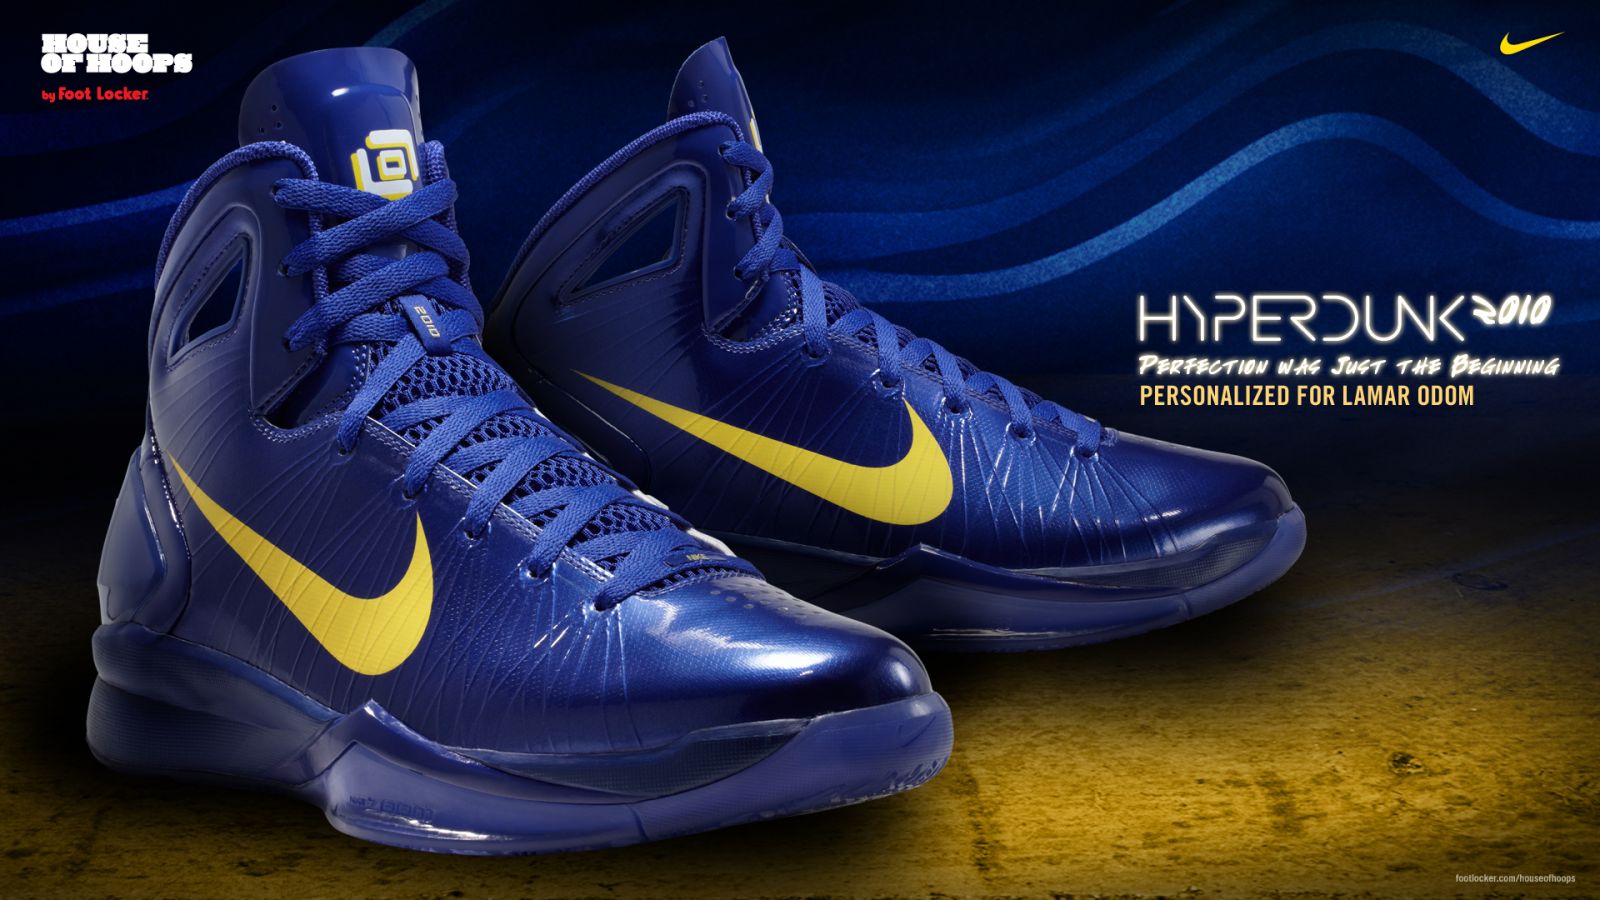 Nike Hyperdunk 2010 Lamar Odom Player Edition